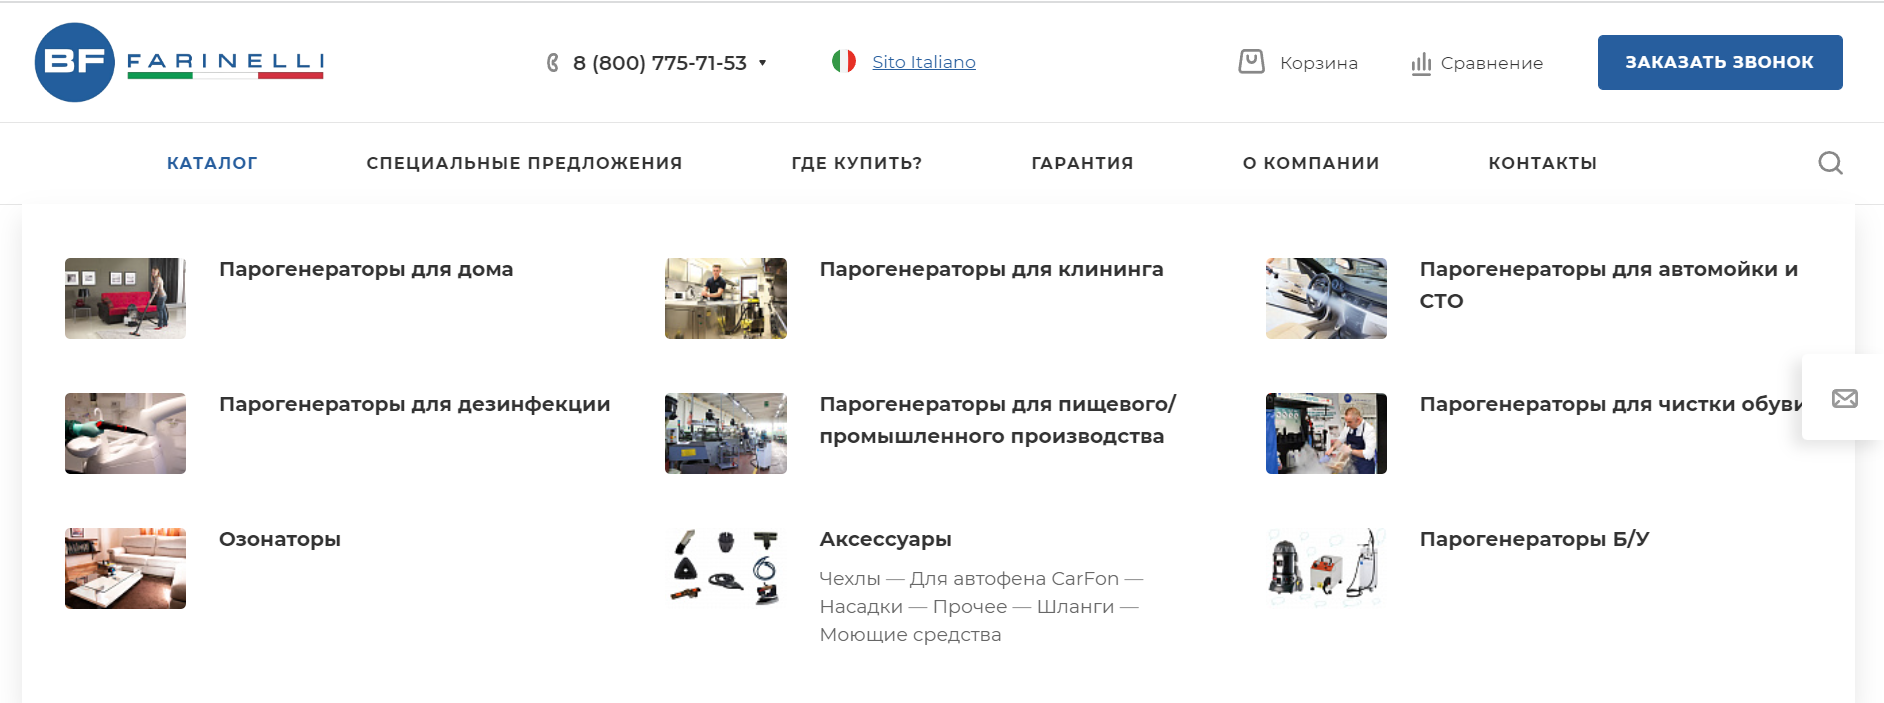 корпоративный сайт итальянского производителя парогенераторов в россии с каталогом продукции